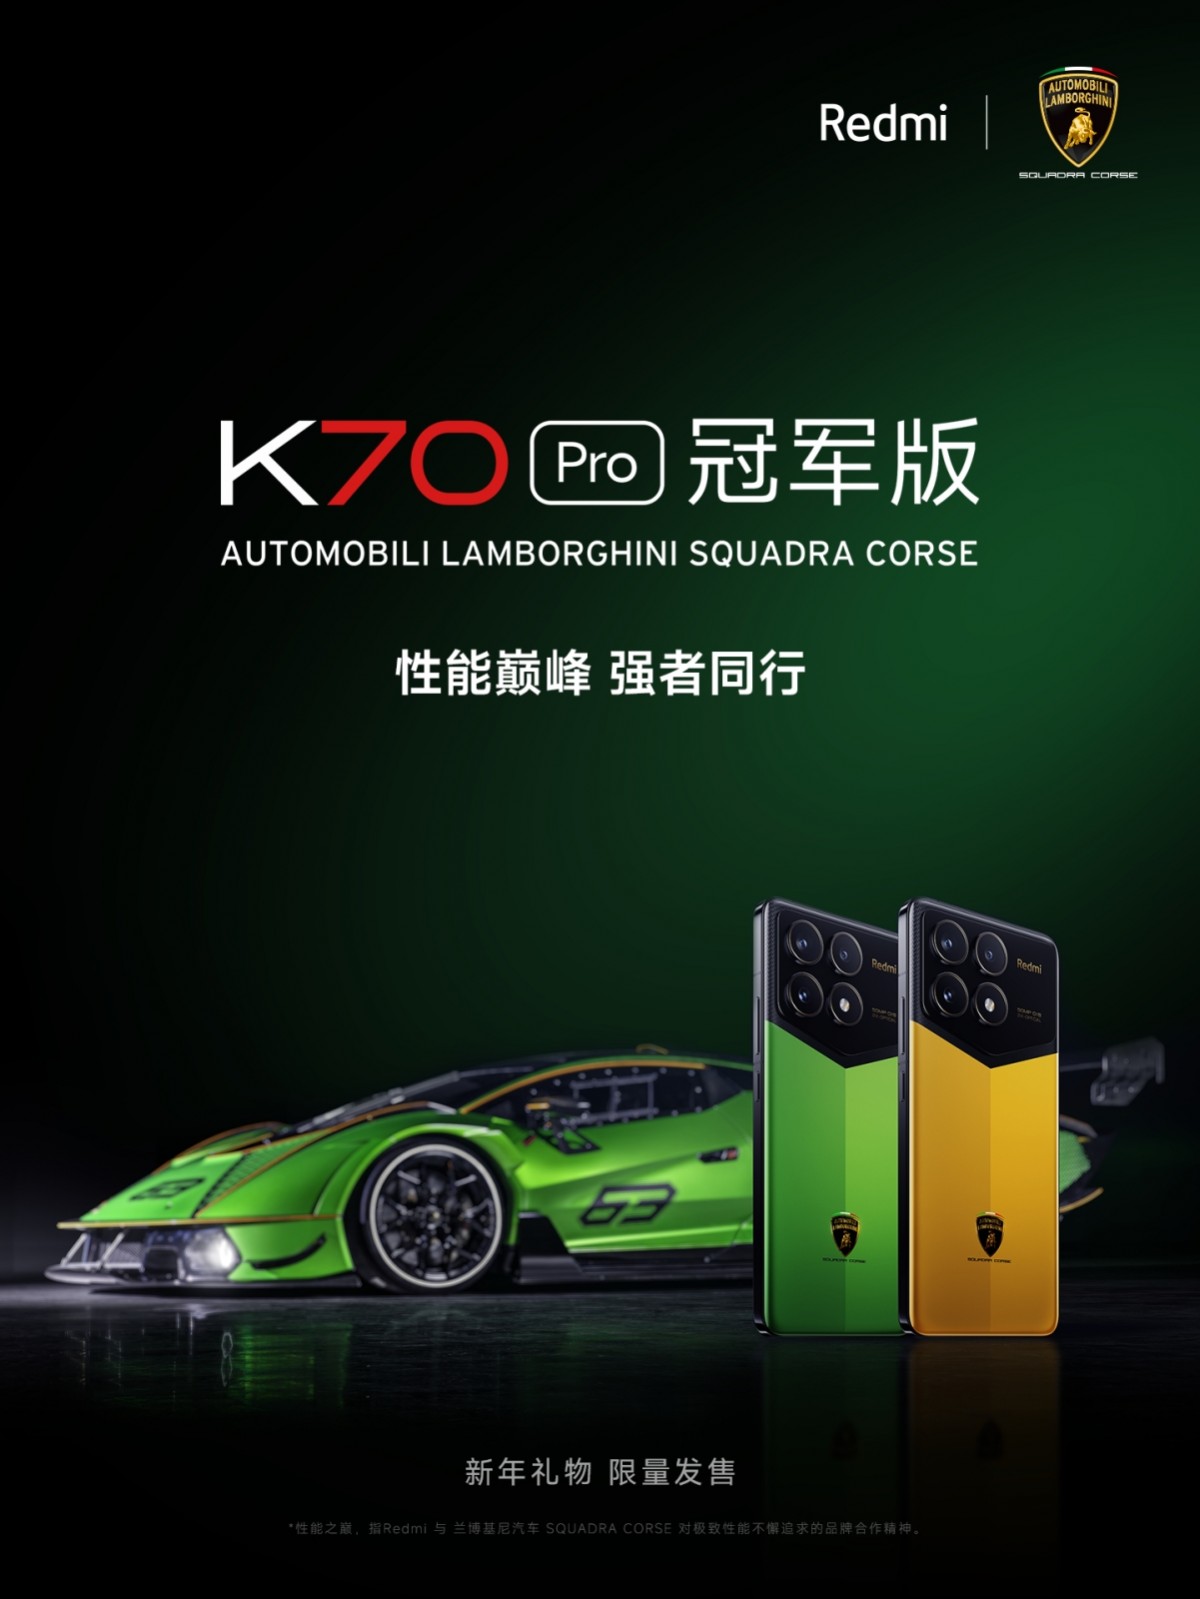 Redmi K70 Pro Automobili Lamborghini Squadra Corse comes with 24 GB RAM, 1 TB storage.